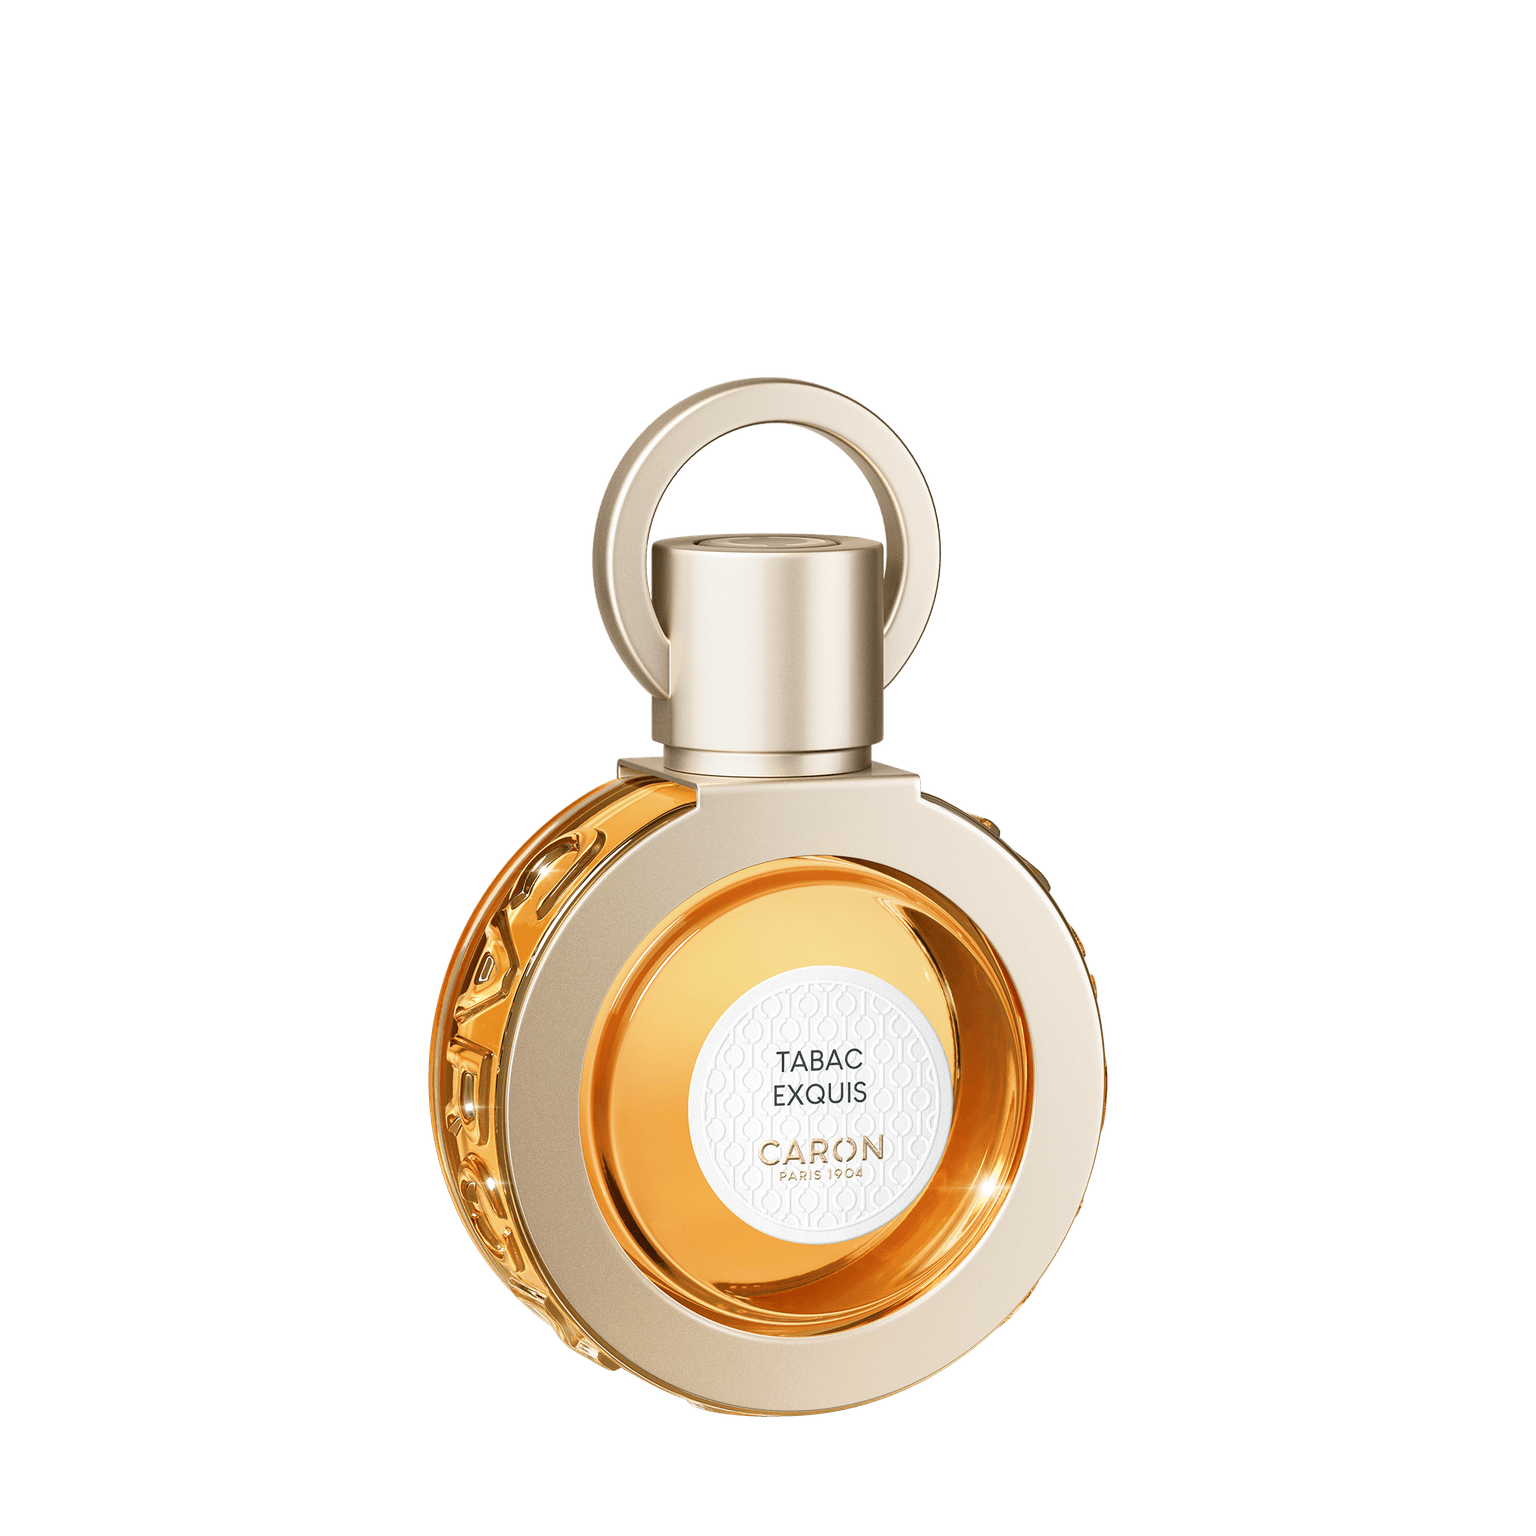 Caron Tabac Exquis Moi 50ml | Perfume Lounge.